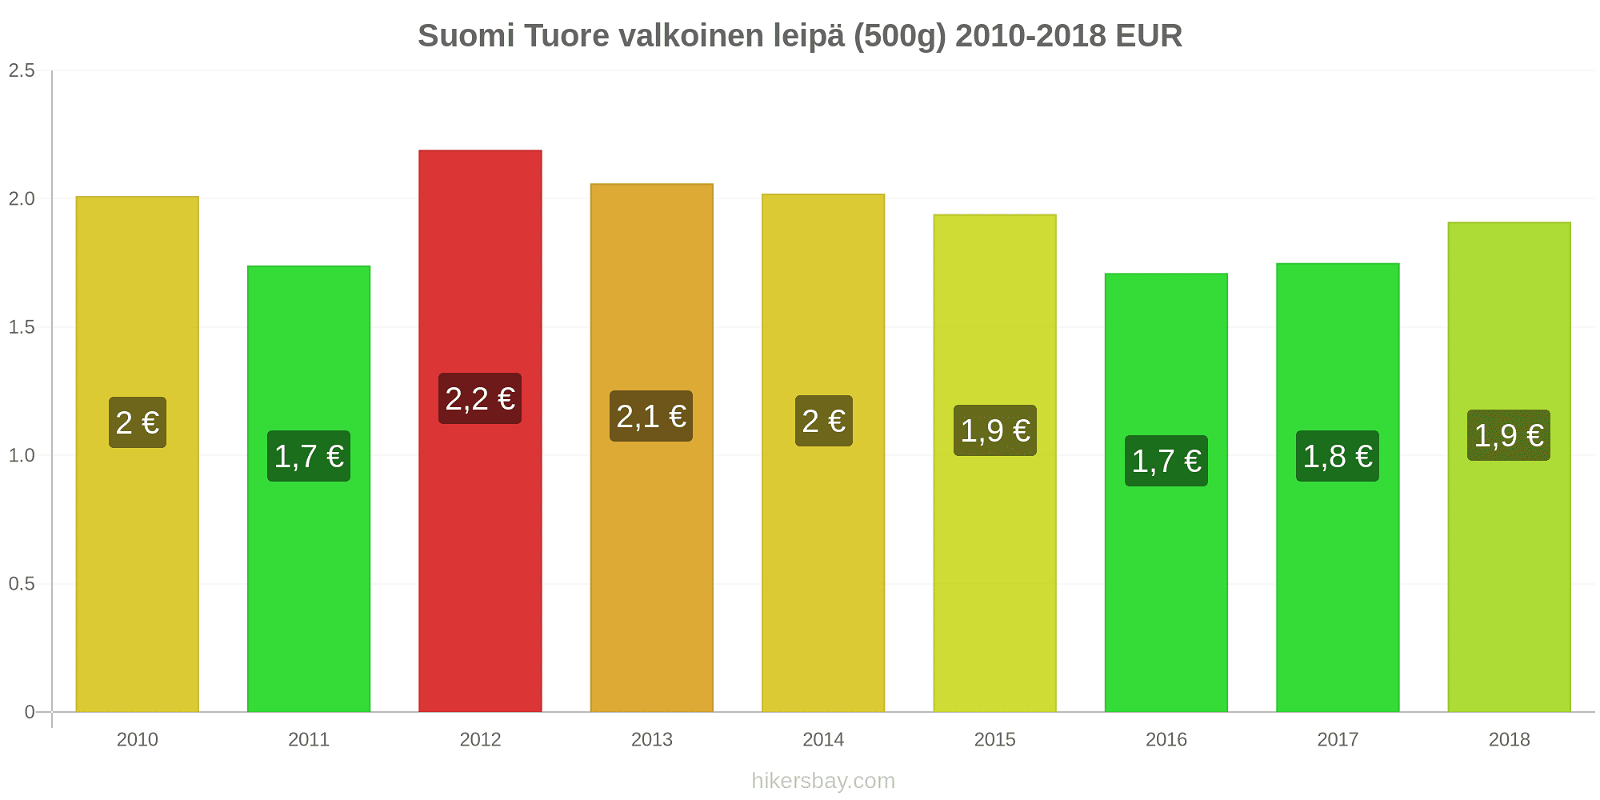 Suomi hintojen muutokset Tuore valkoinen leipä (500g) hikersbay.com